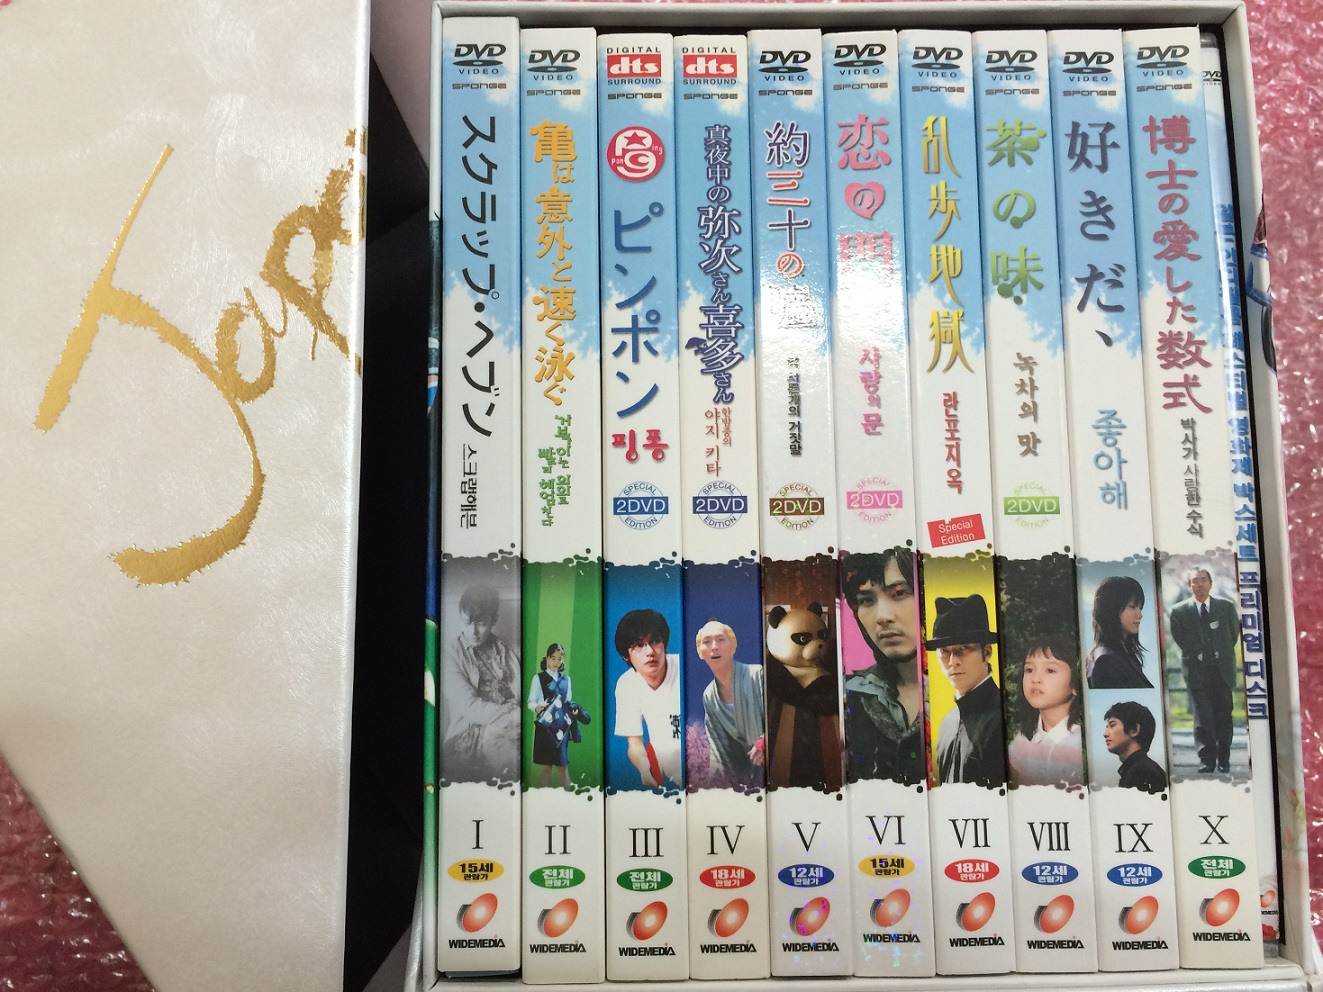 일본 인디필름페스티벌 영화제 박스세트 (16disk) - 초회판 디지팩,아웃케이스,프리미엄 디스크 포함